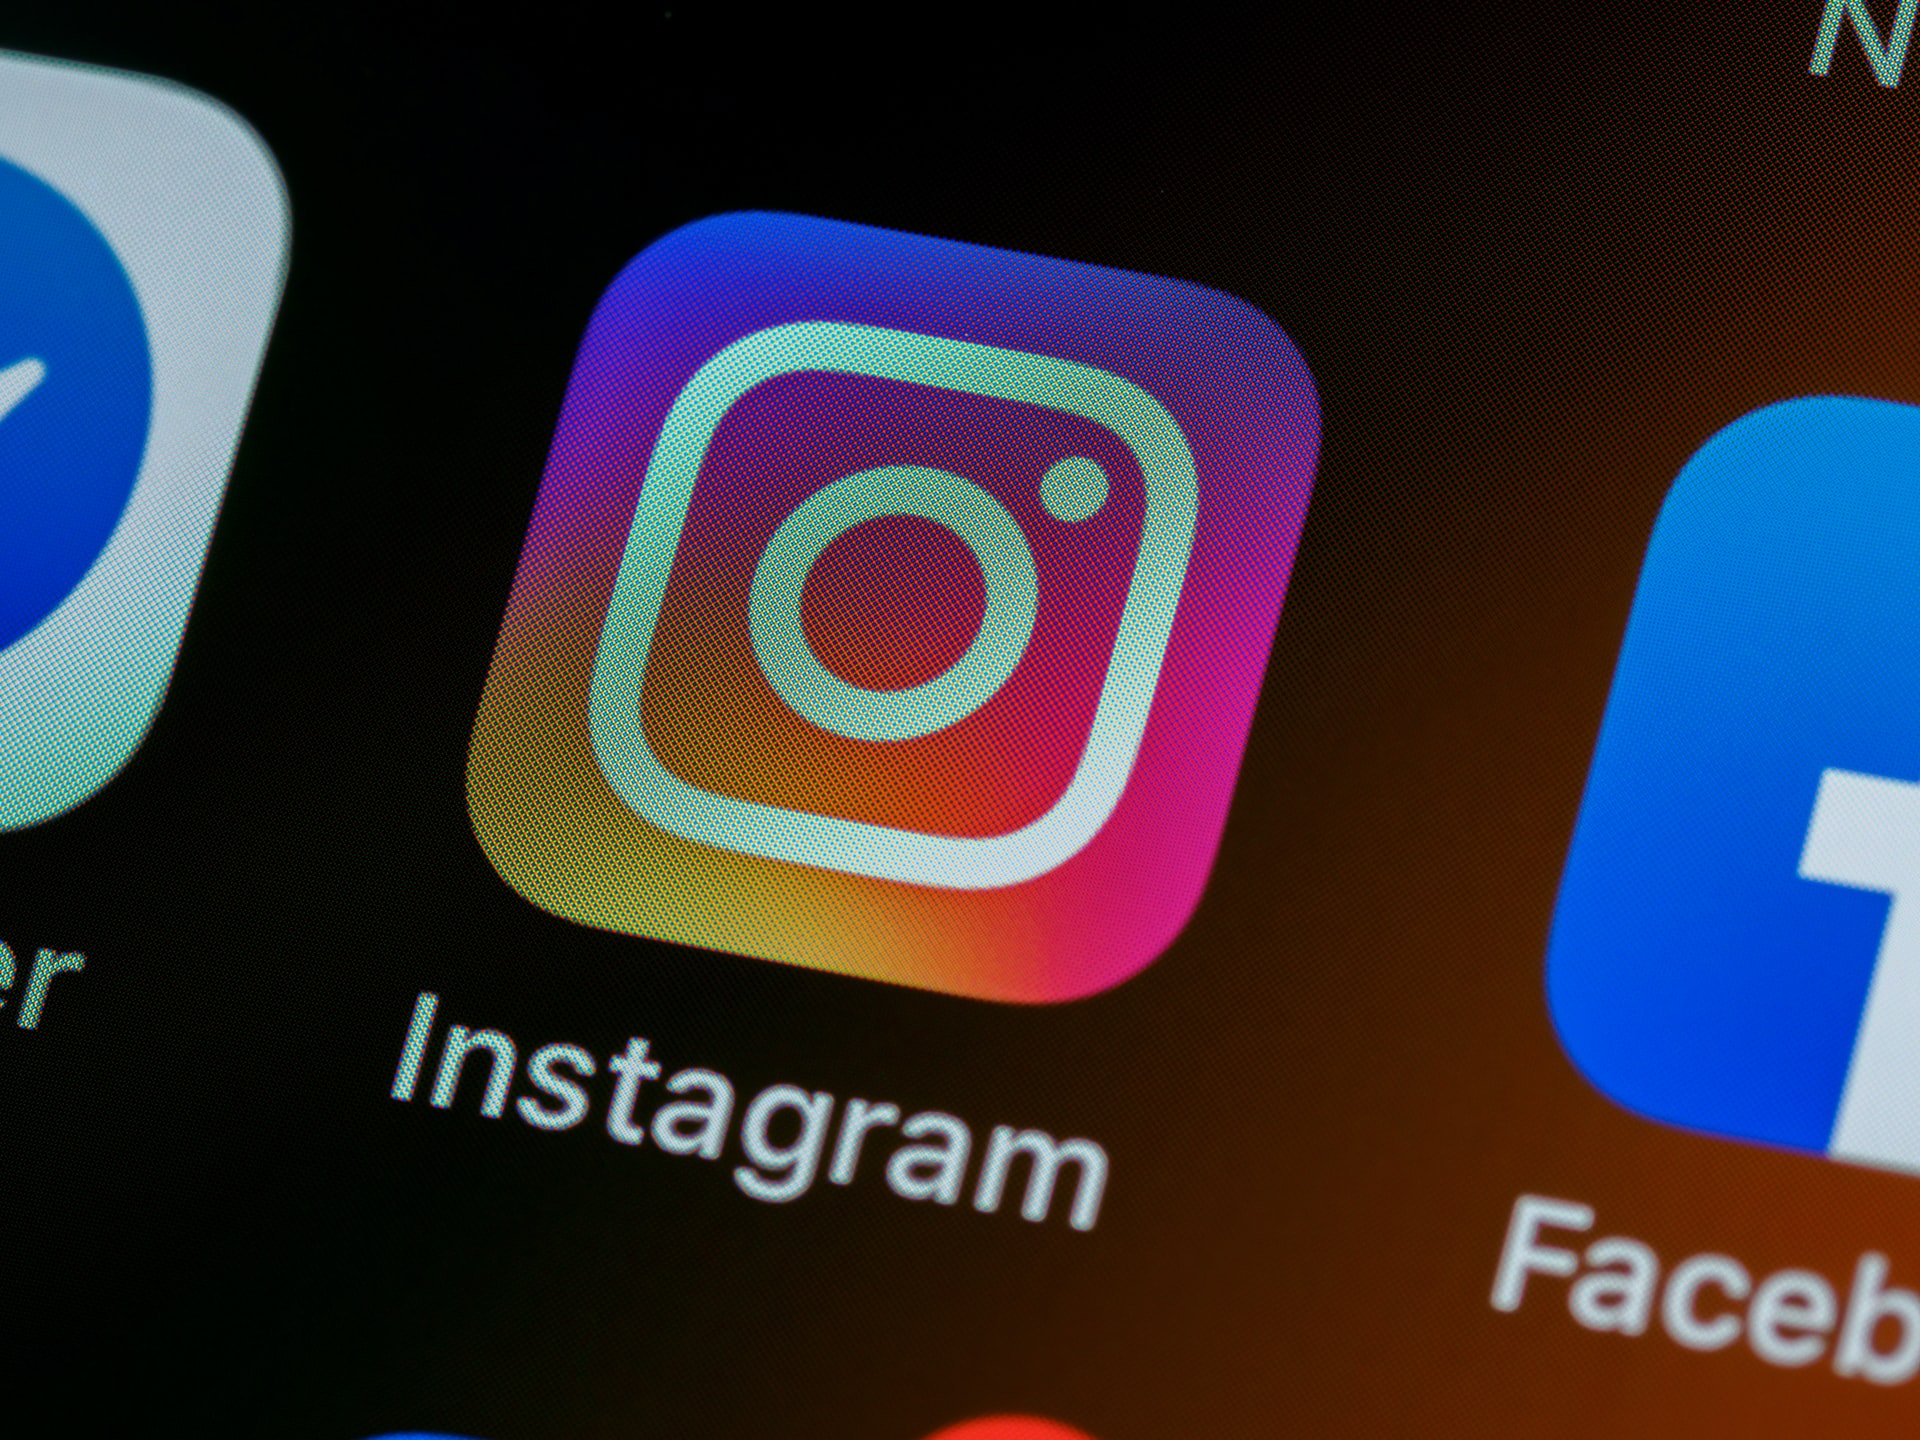 Instagram introduce la verifica dell'identità tramite i video selfies